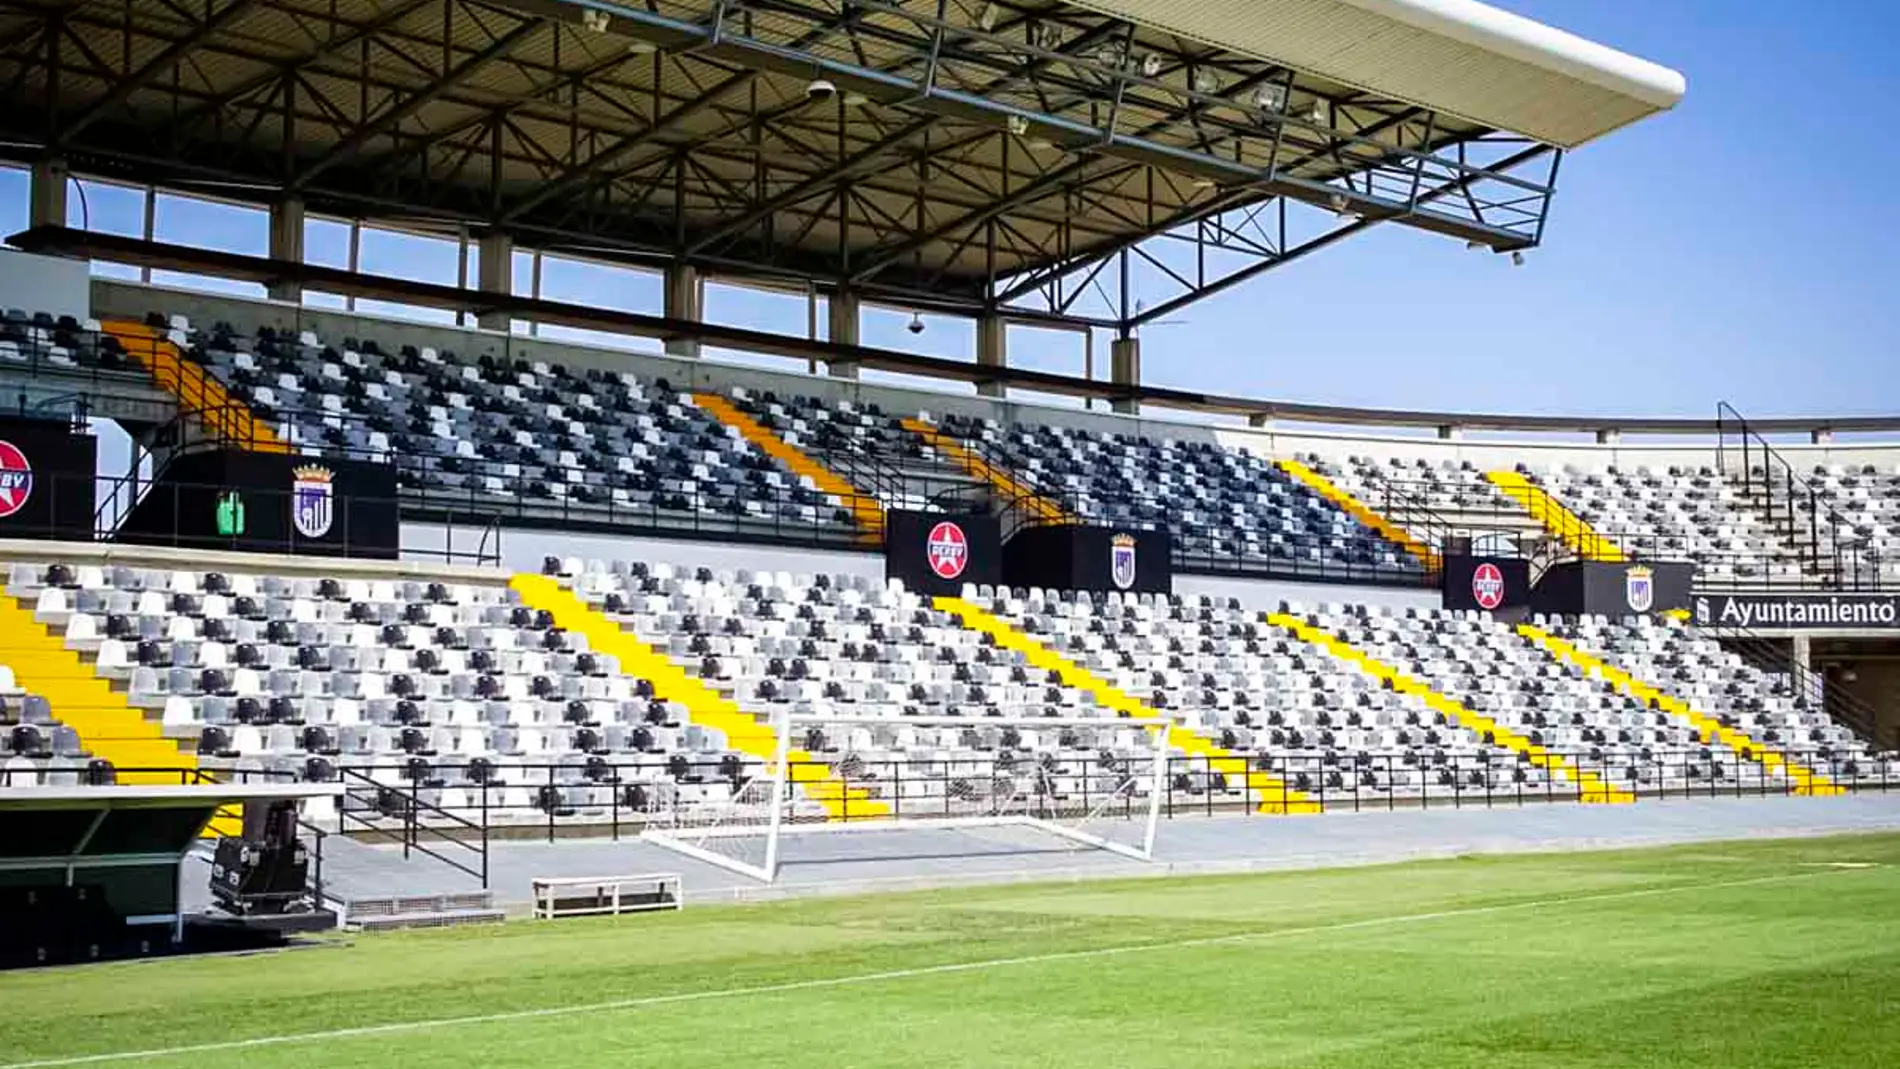 Las jugadoras del Badajoz también denuncian una "grave situación" e impagos por parte del club